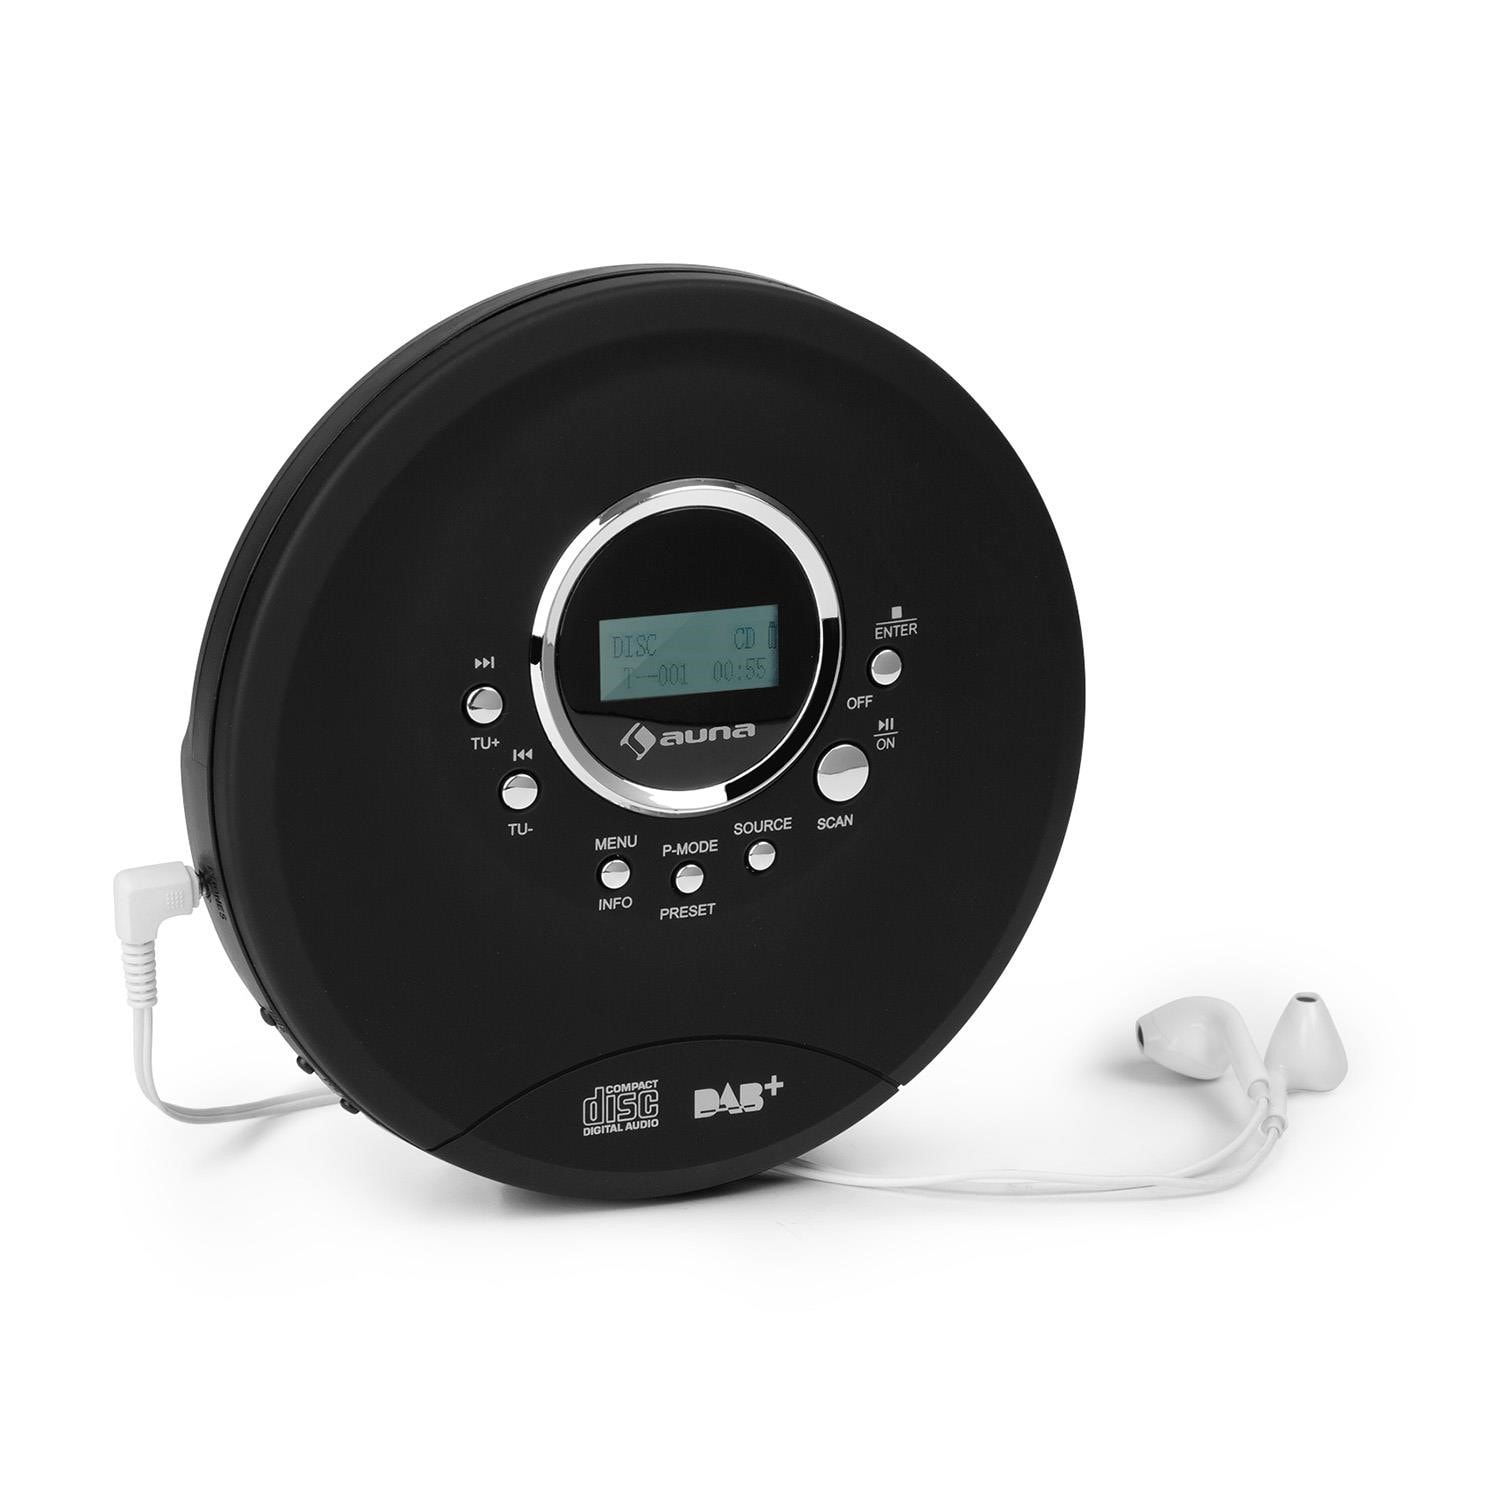 Lecteur CD portable, radio DAB+, Bluetooth et casque stéréo intra